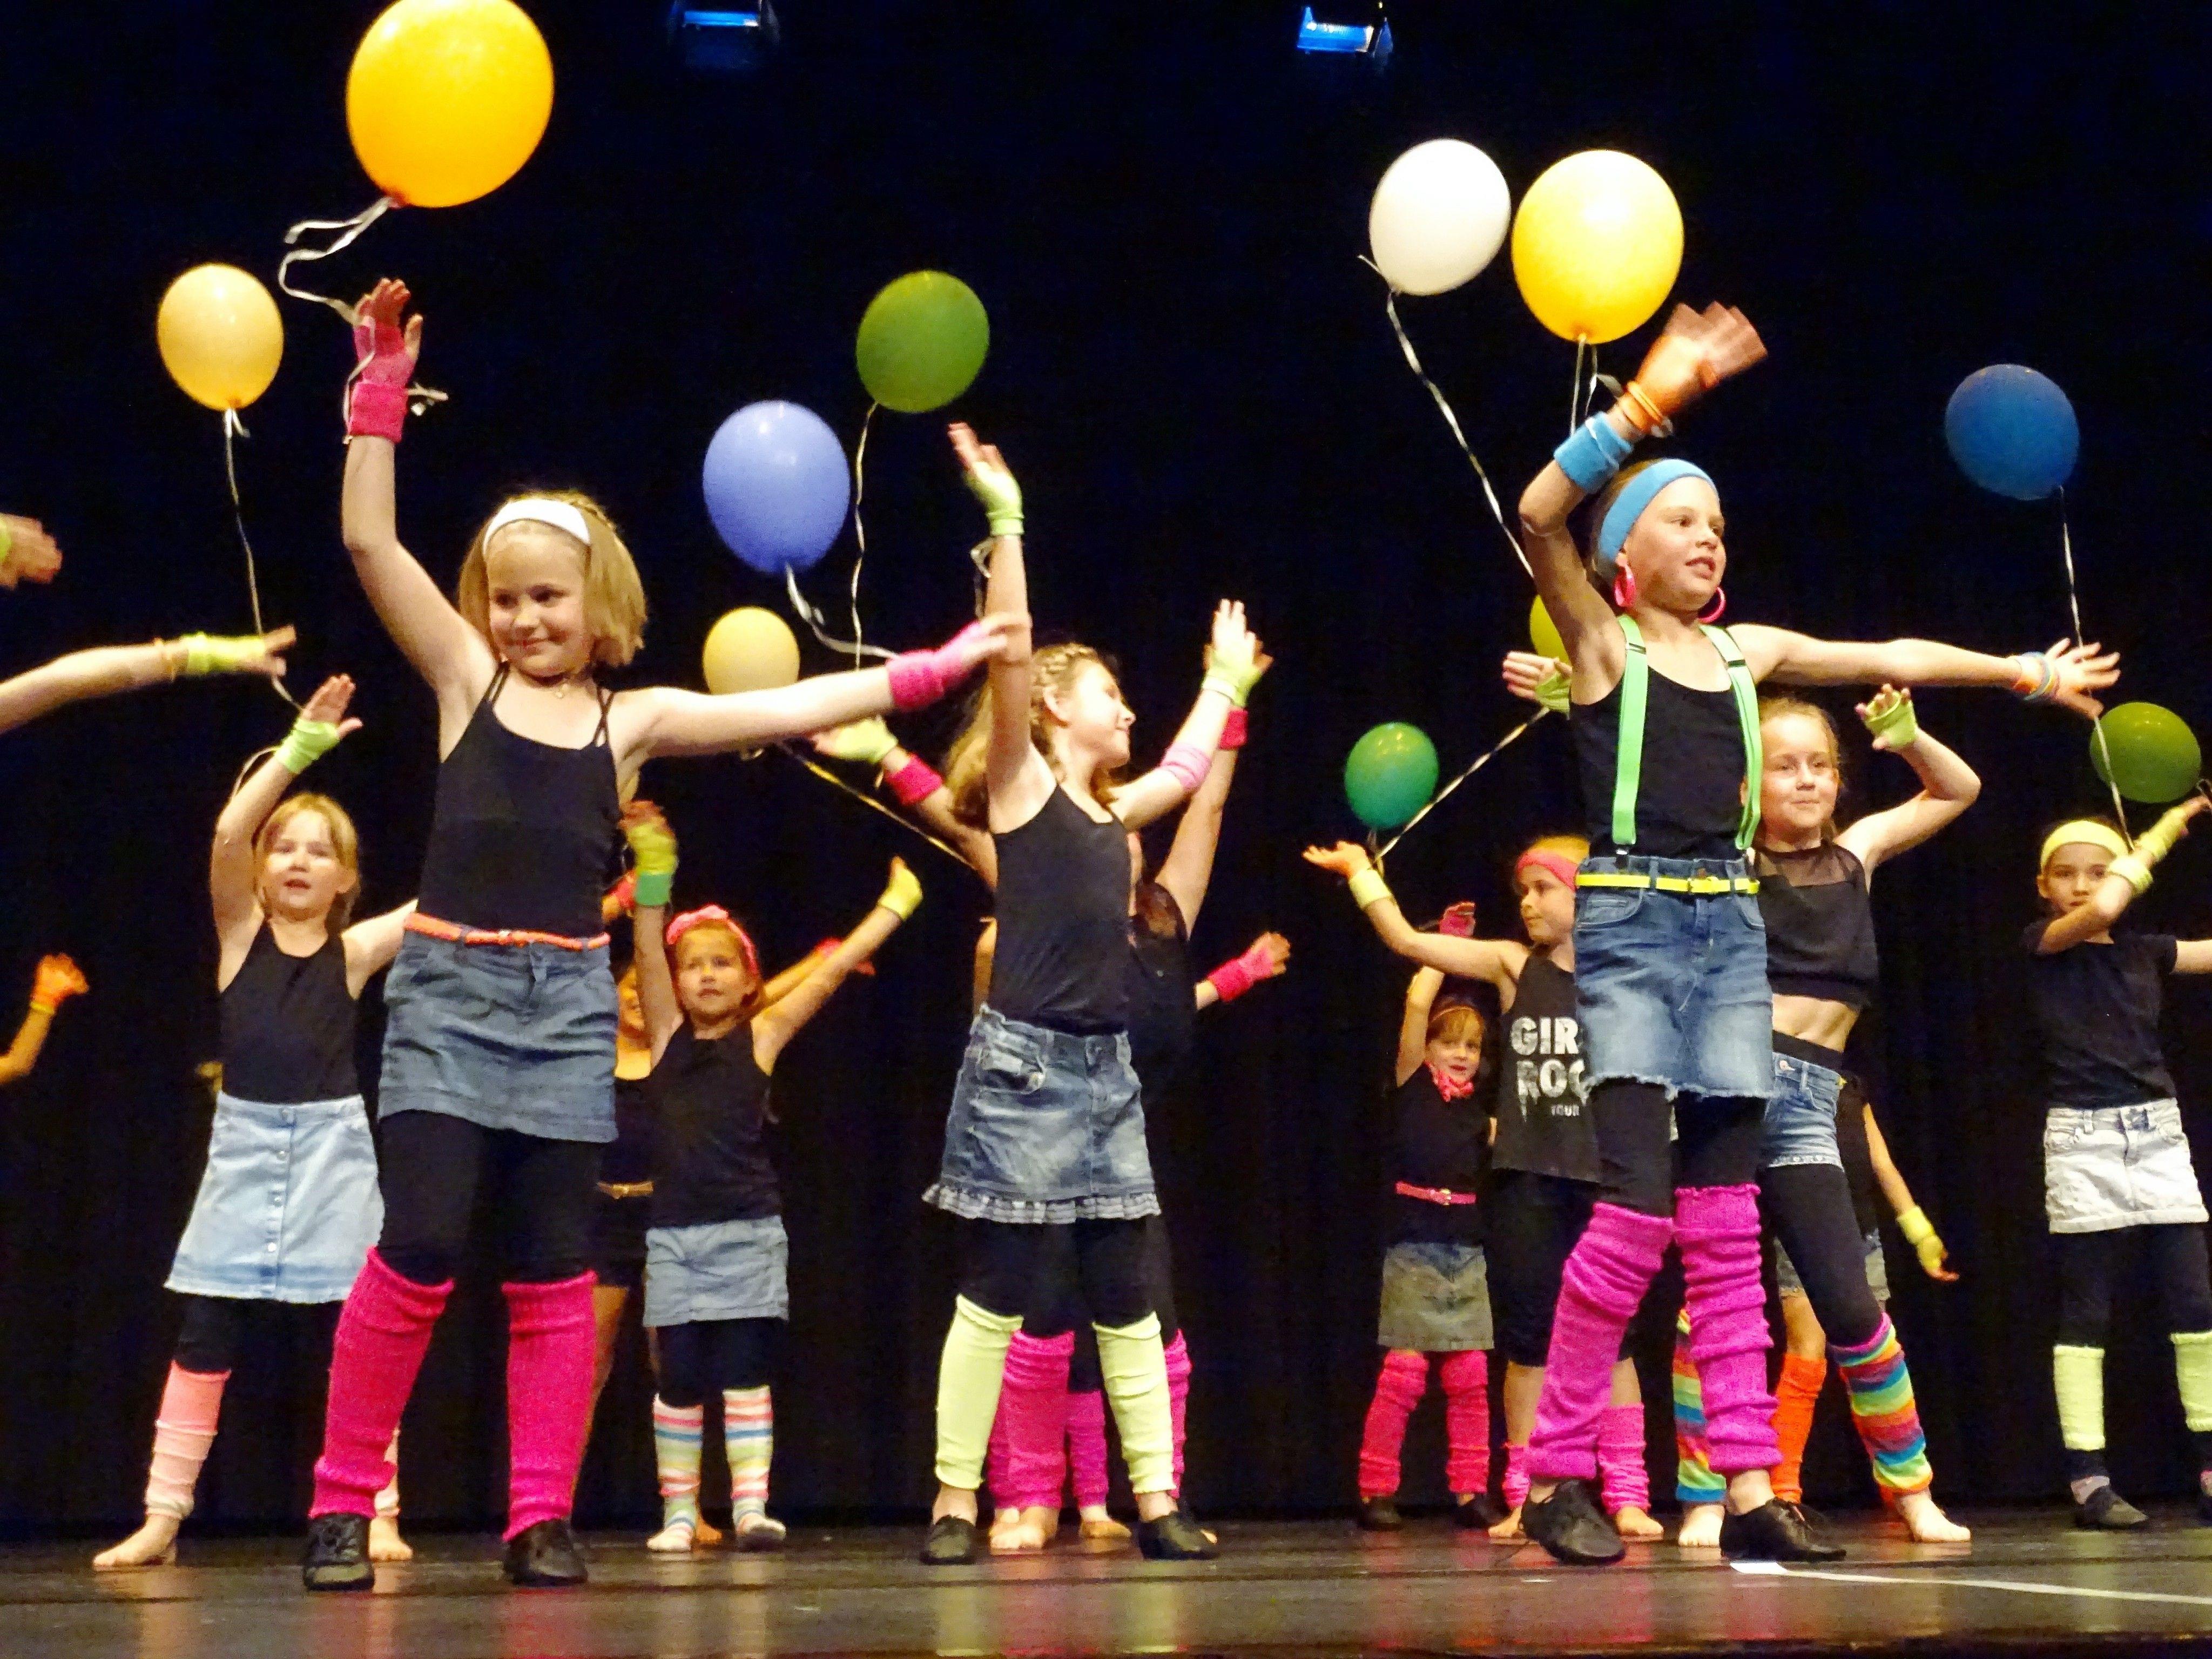 Ein farbenprächtiges Bild auf die Bühne zauberte die Tanzeinlage zu Nenas Hit „99 Luftballons“.